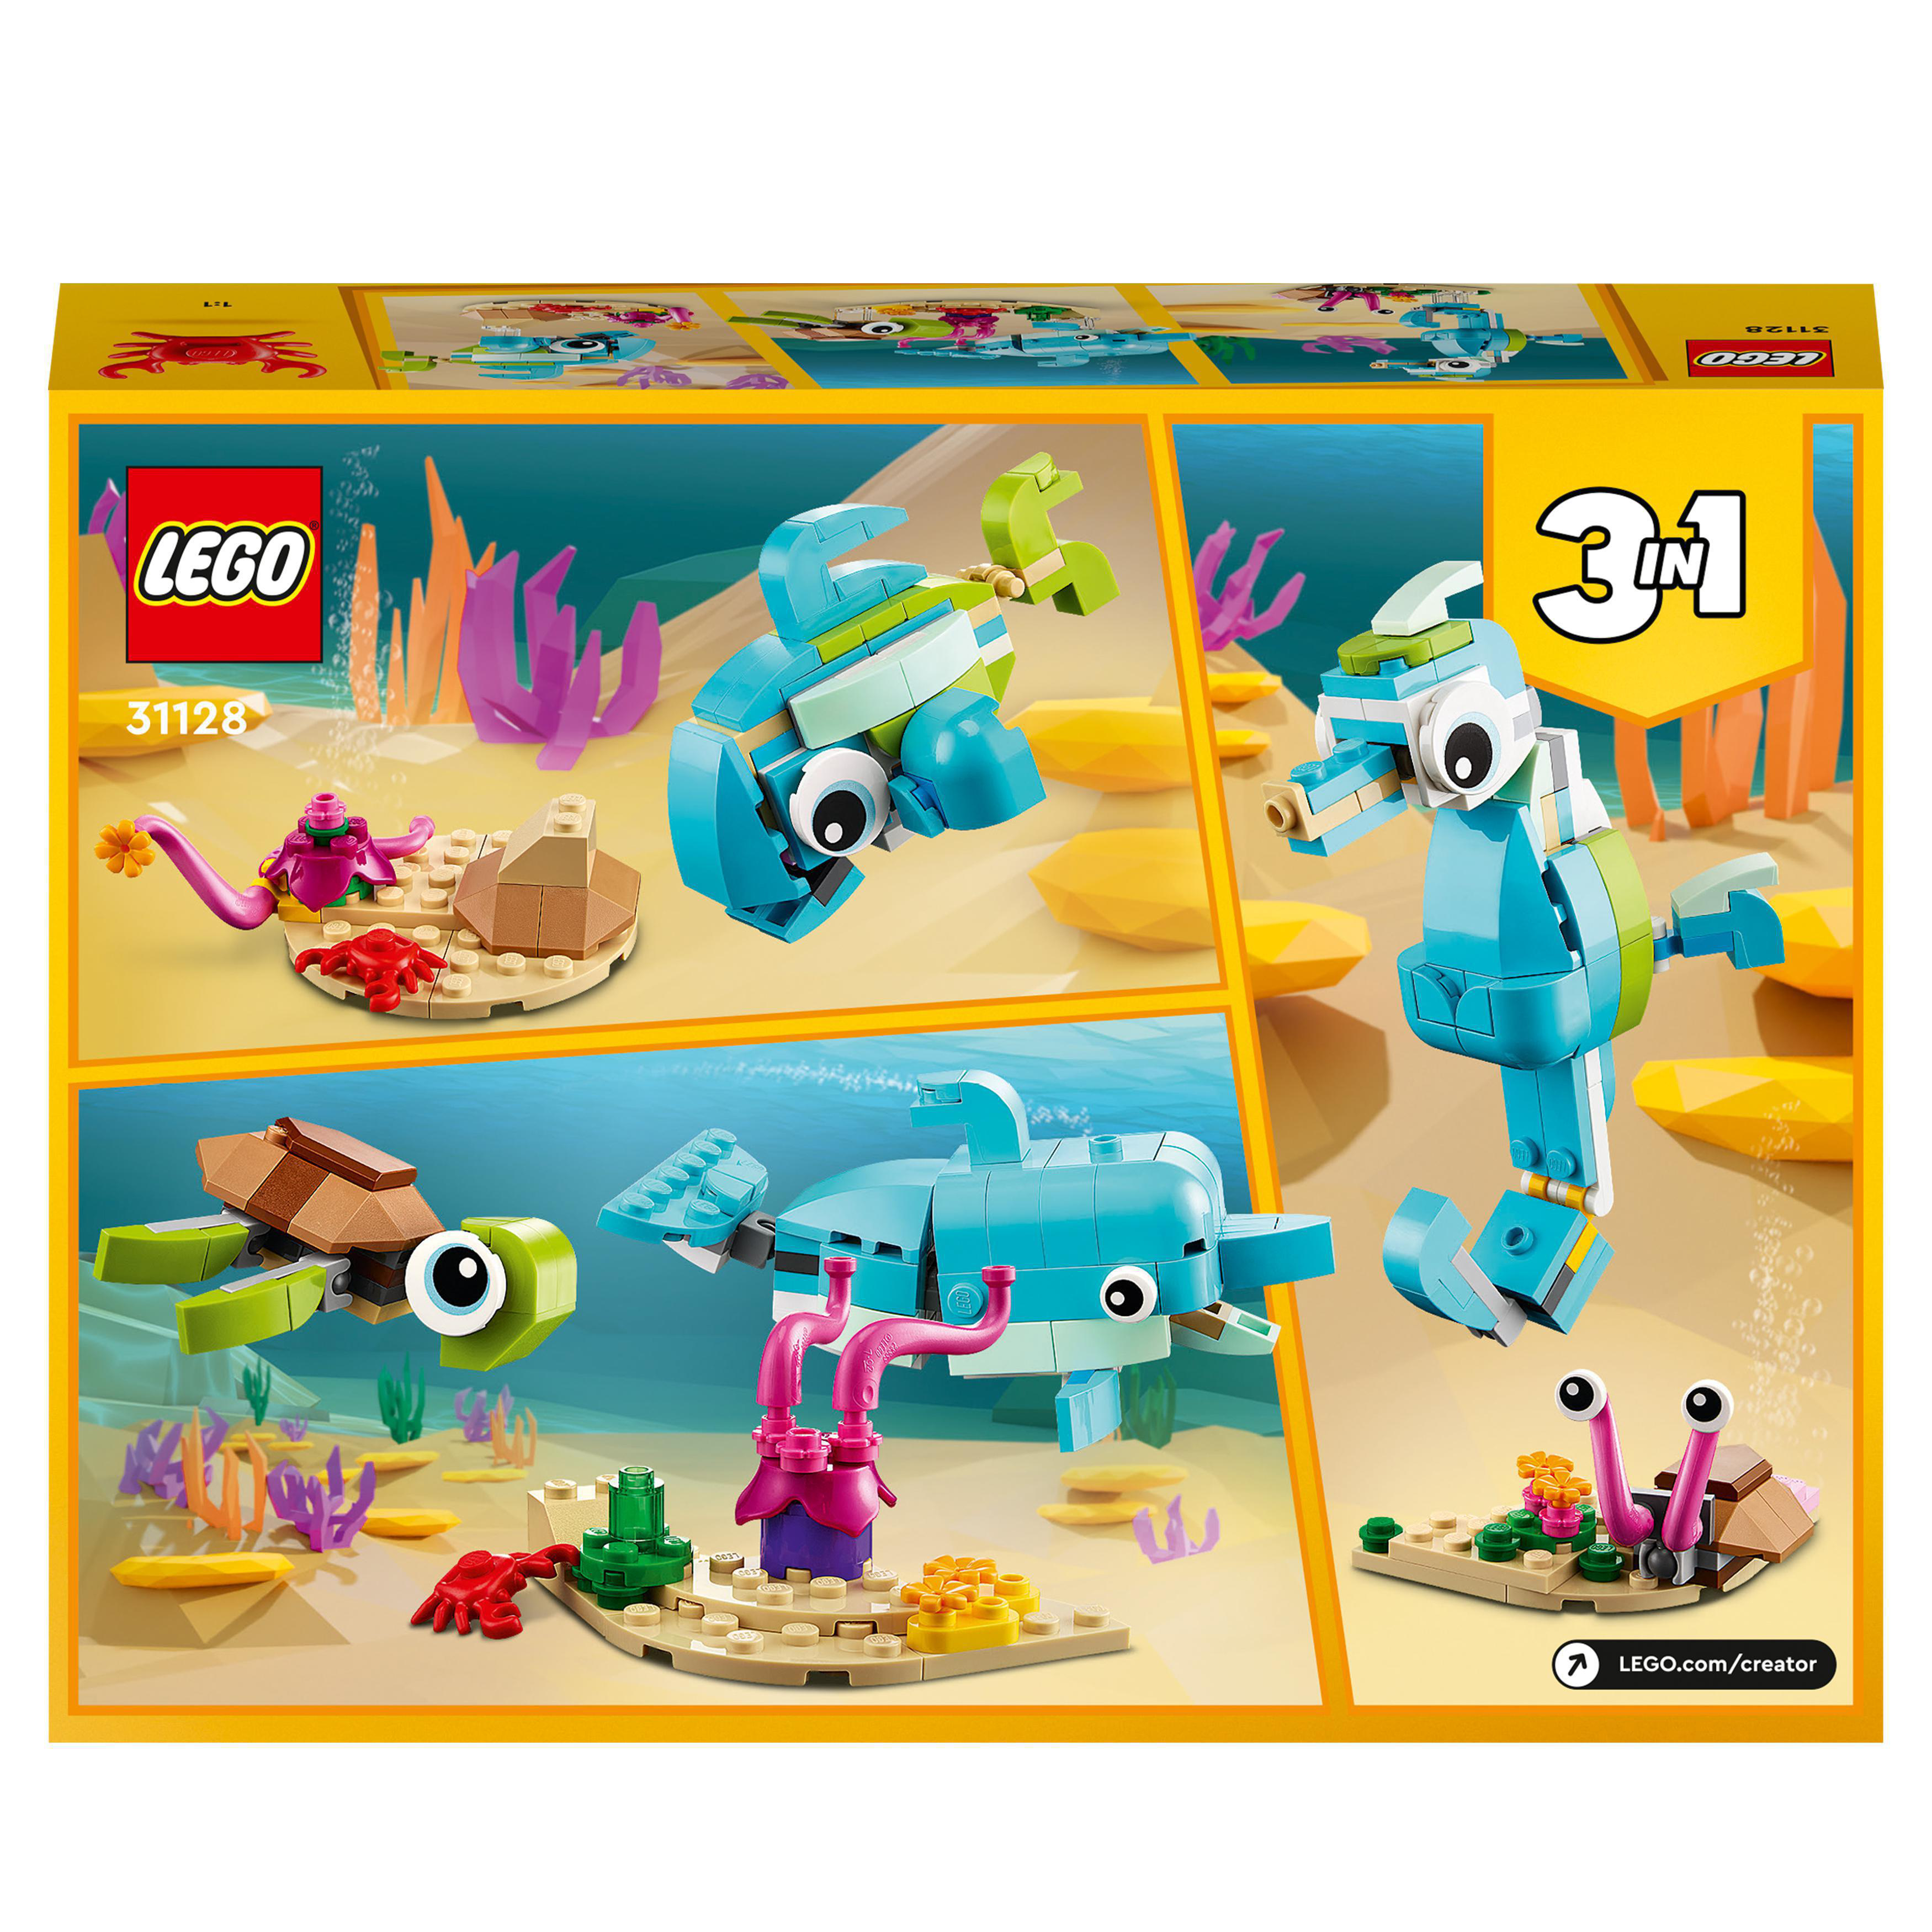 LEGO Creator 31128 und Delfin Schildkröte Bausatz, Mehrfarbig